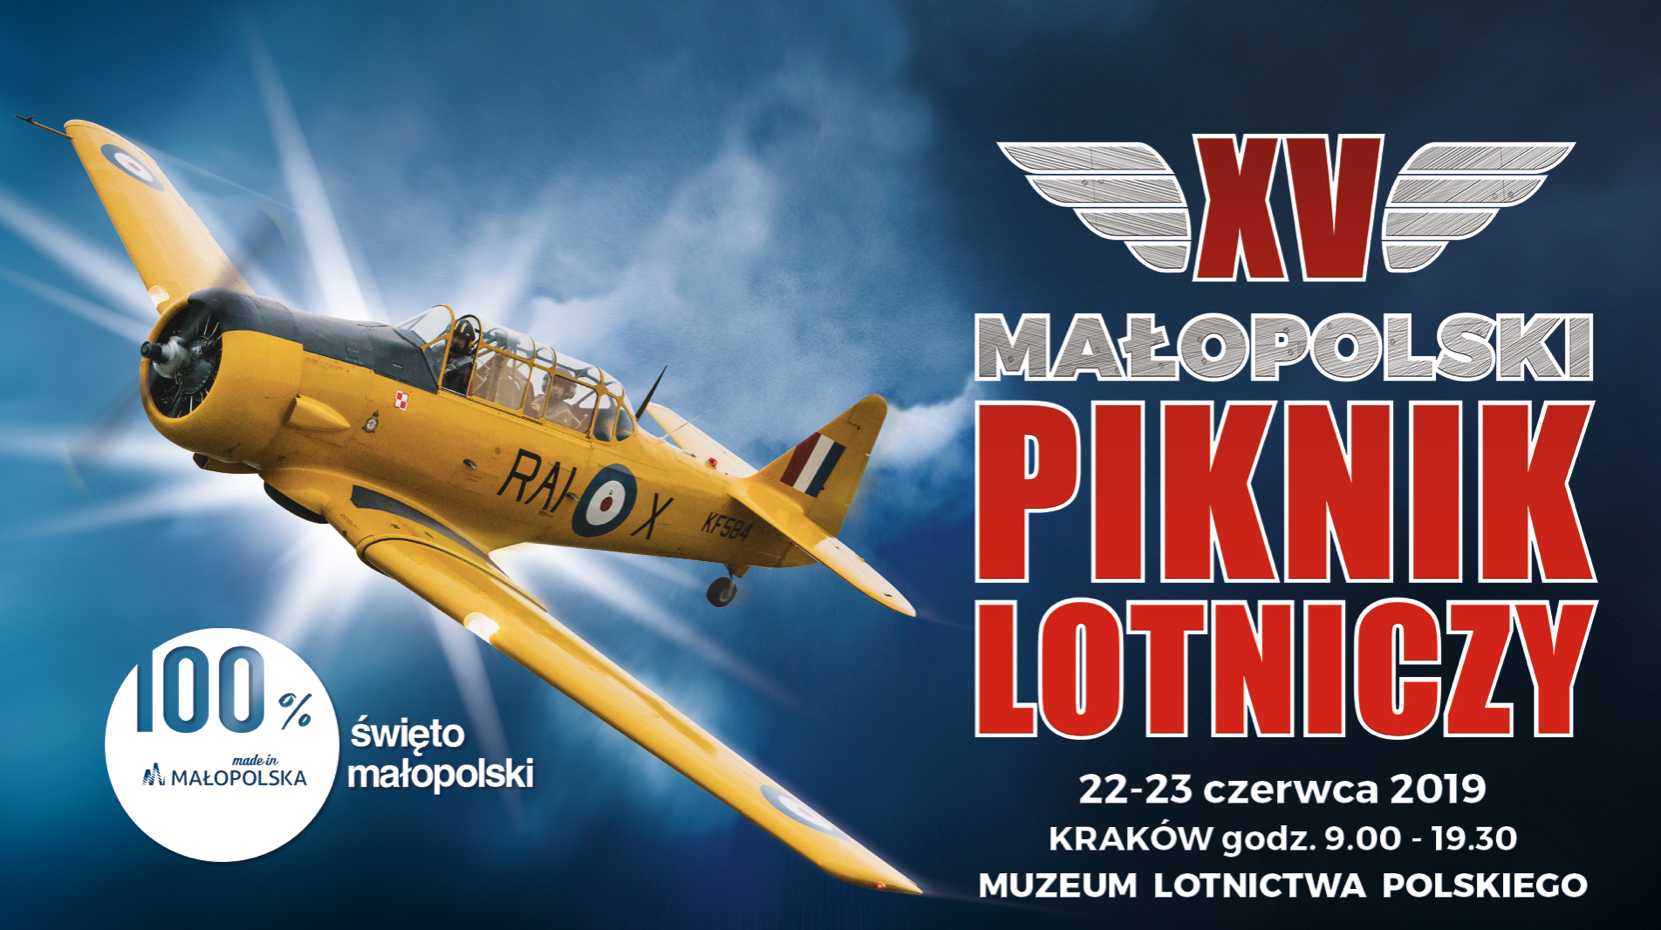 Poster of the XV Małopolskiego Pikniku Lotniczego. Czyżyny 2019